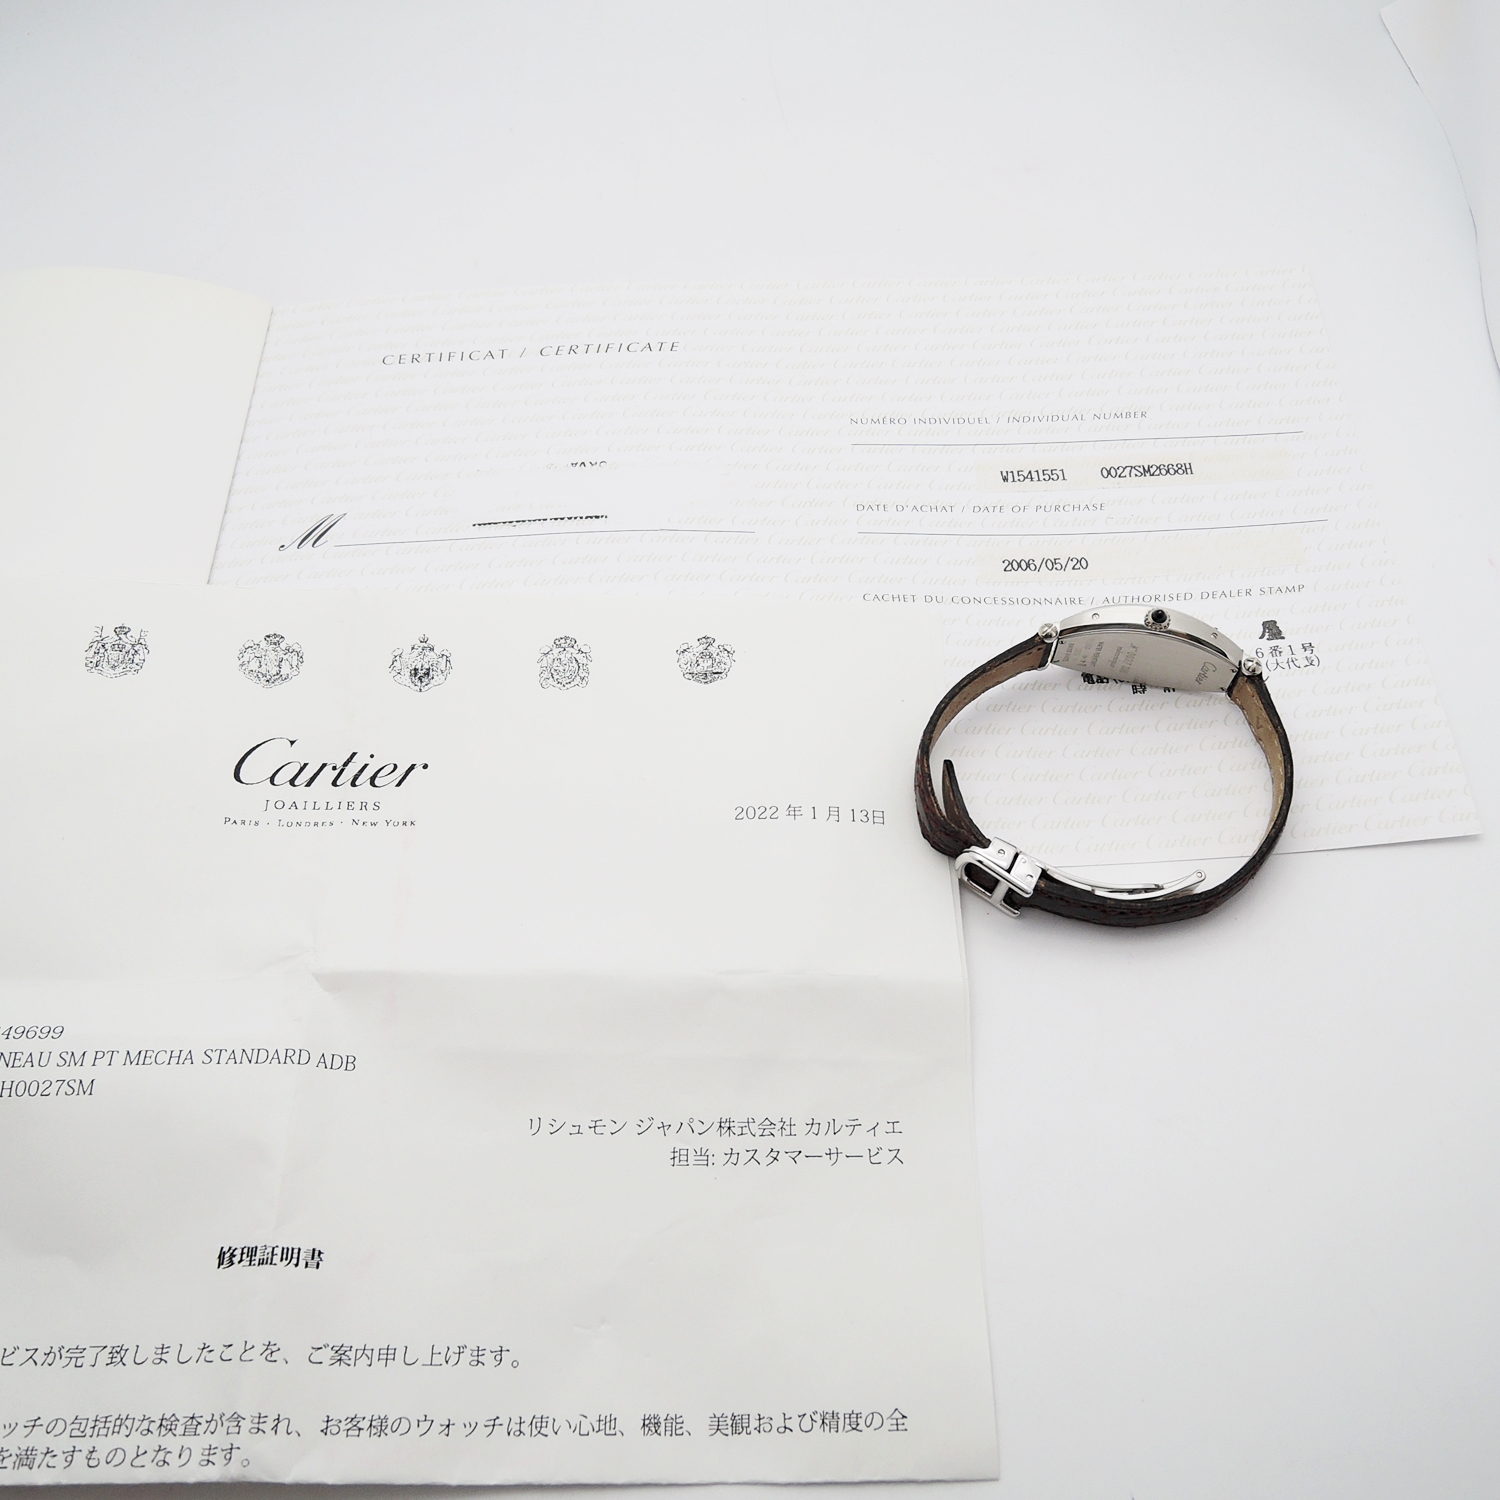 カルティエ トノー コレクション プリヴェ カルティエ パリ W1541551 CARTIER Tonneau Collection Privee Cartier Paris C002433のイメージ画像